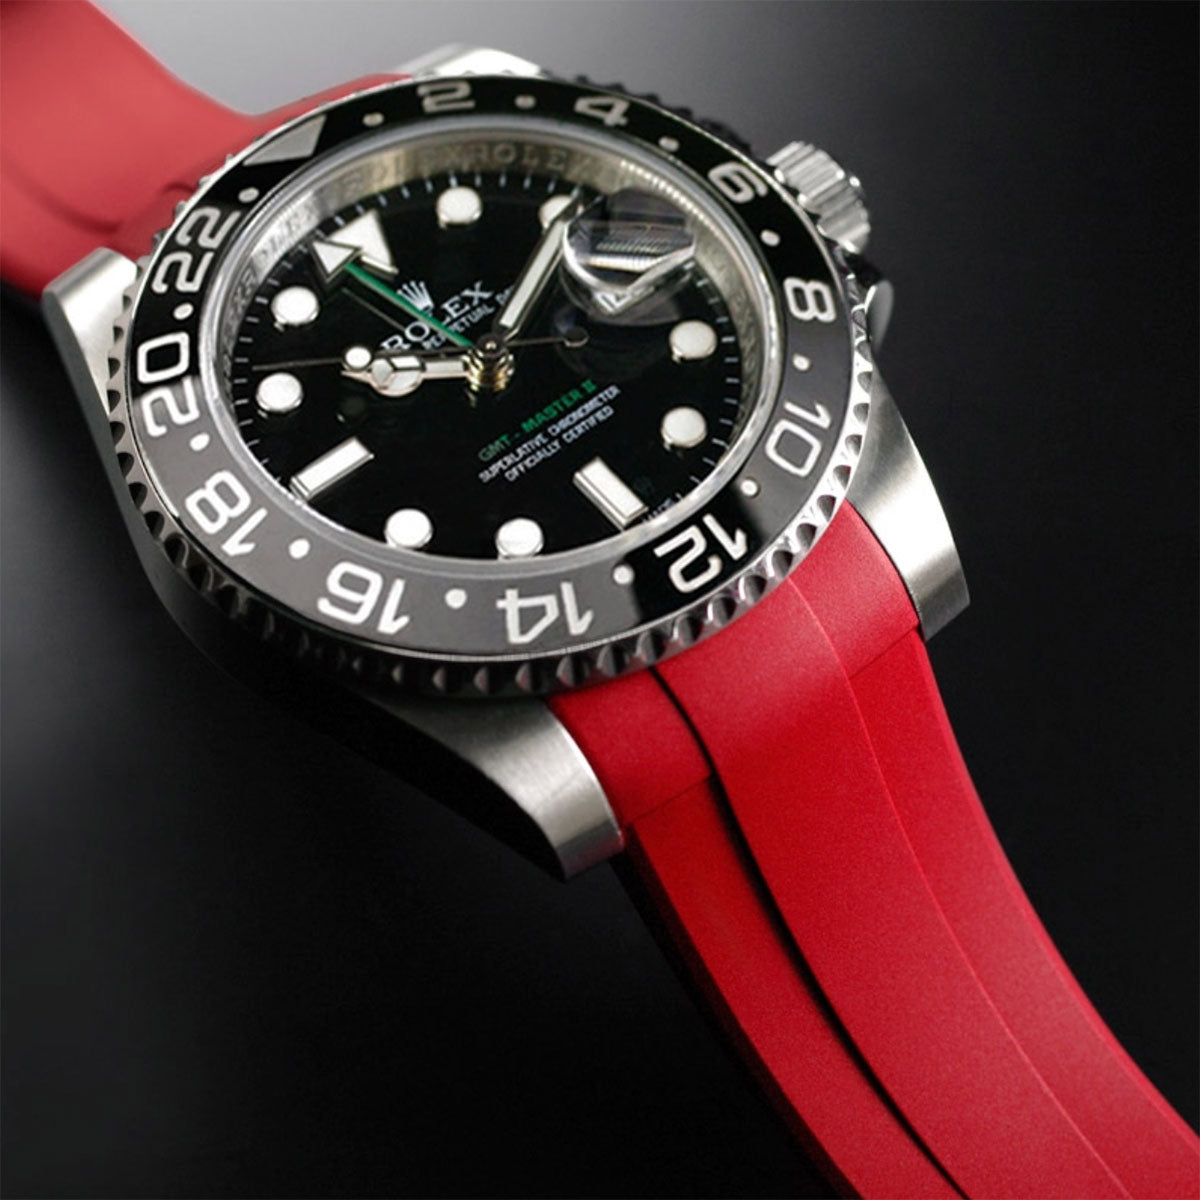 Rolex - Rubber B - Bracelet caoutchouc pour GMT Master II CERAMIC - Série boucle ardillon - watch band leather strap - ABP Concept -